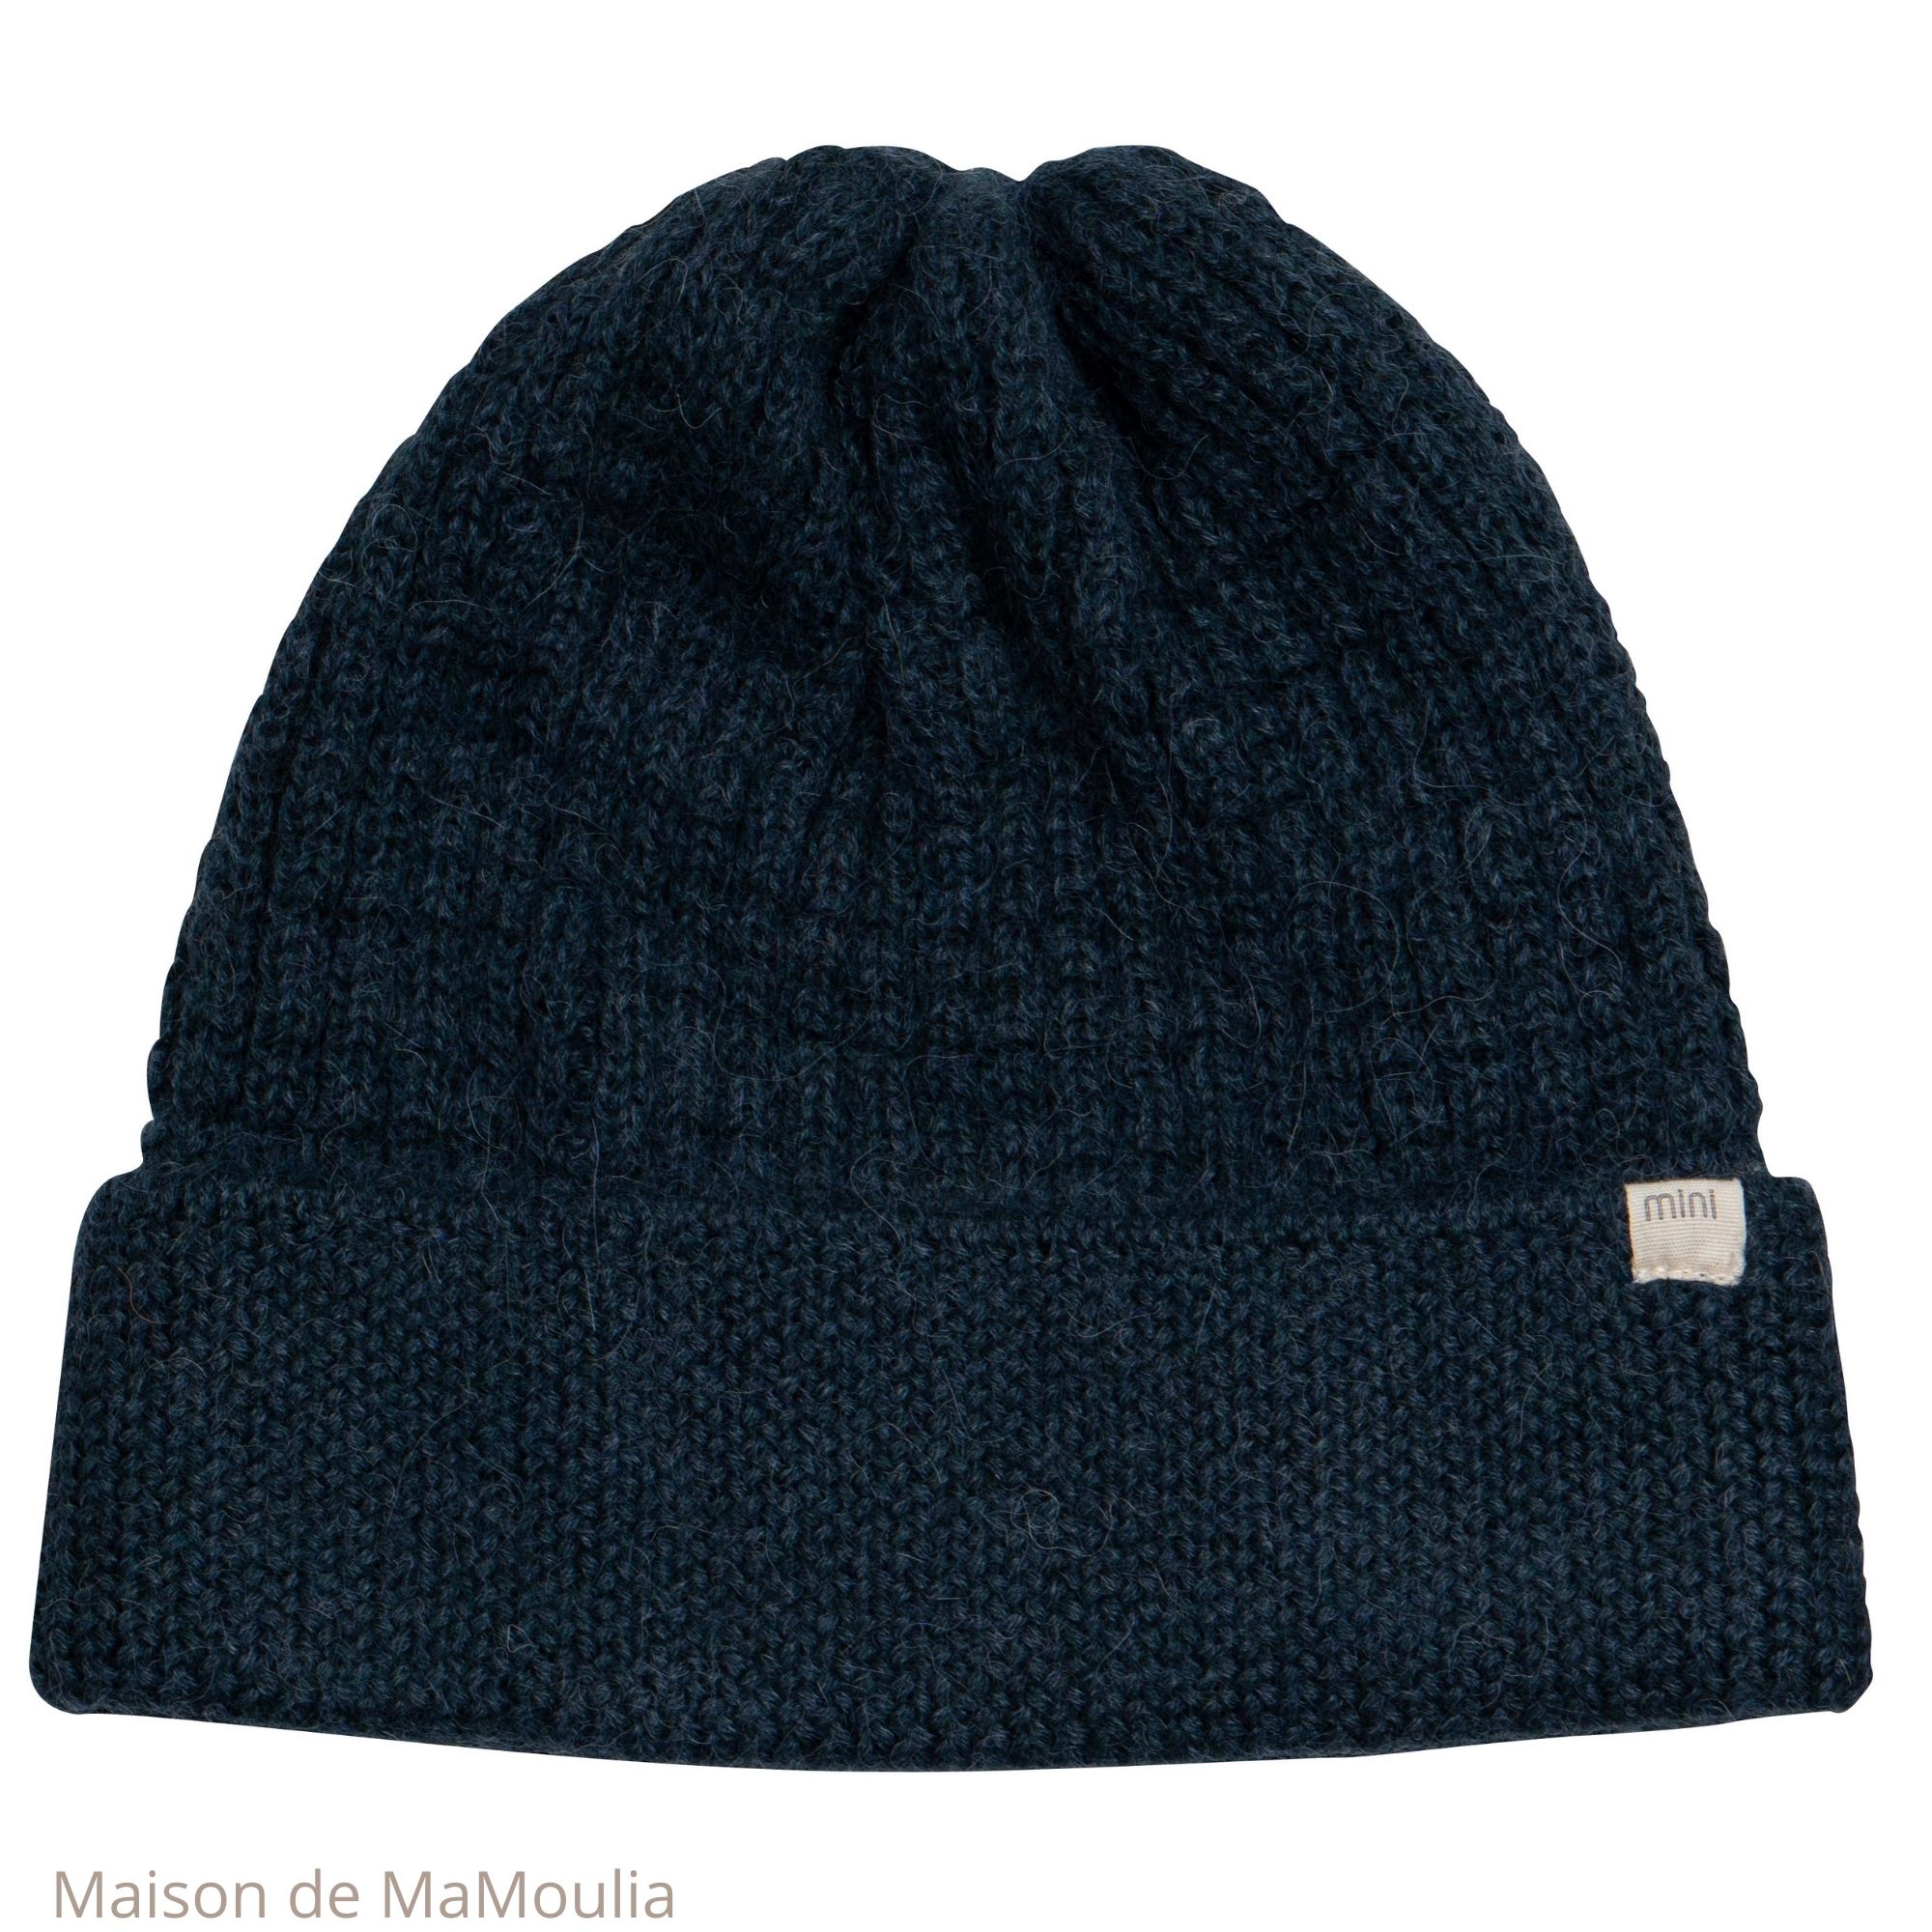 bonnet-chapeau-enfant-fille-pure-laine-alpaga-minimalisma-maison-de-mamoulia-navy-teal-bleu